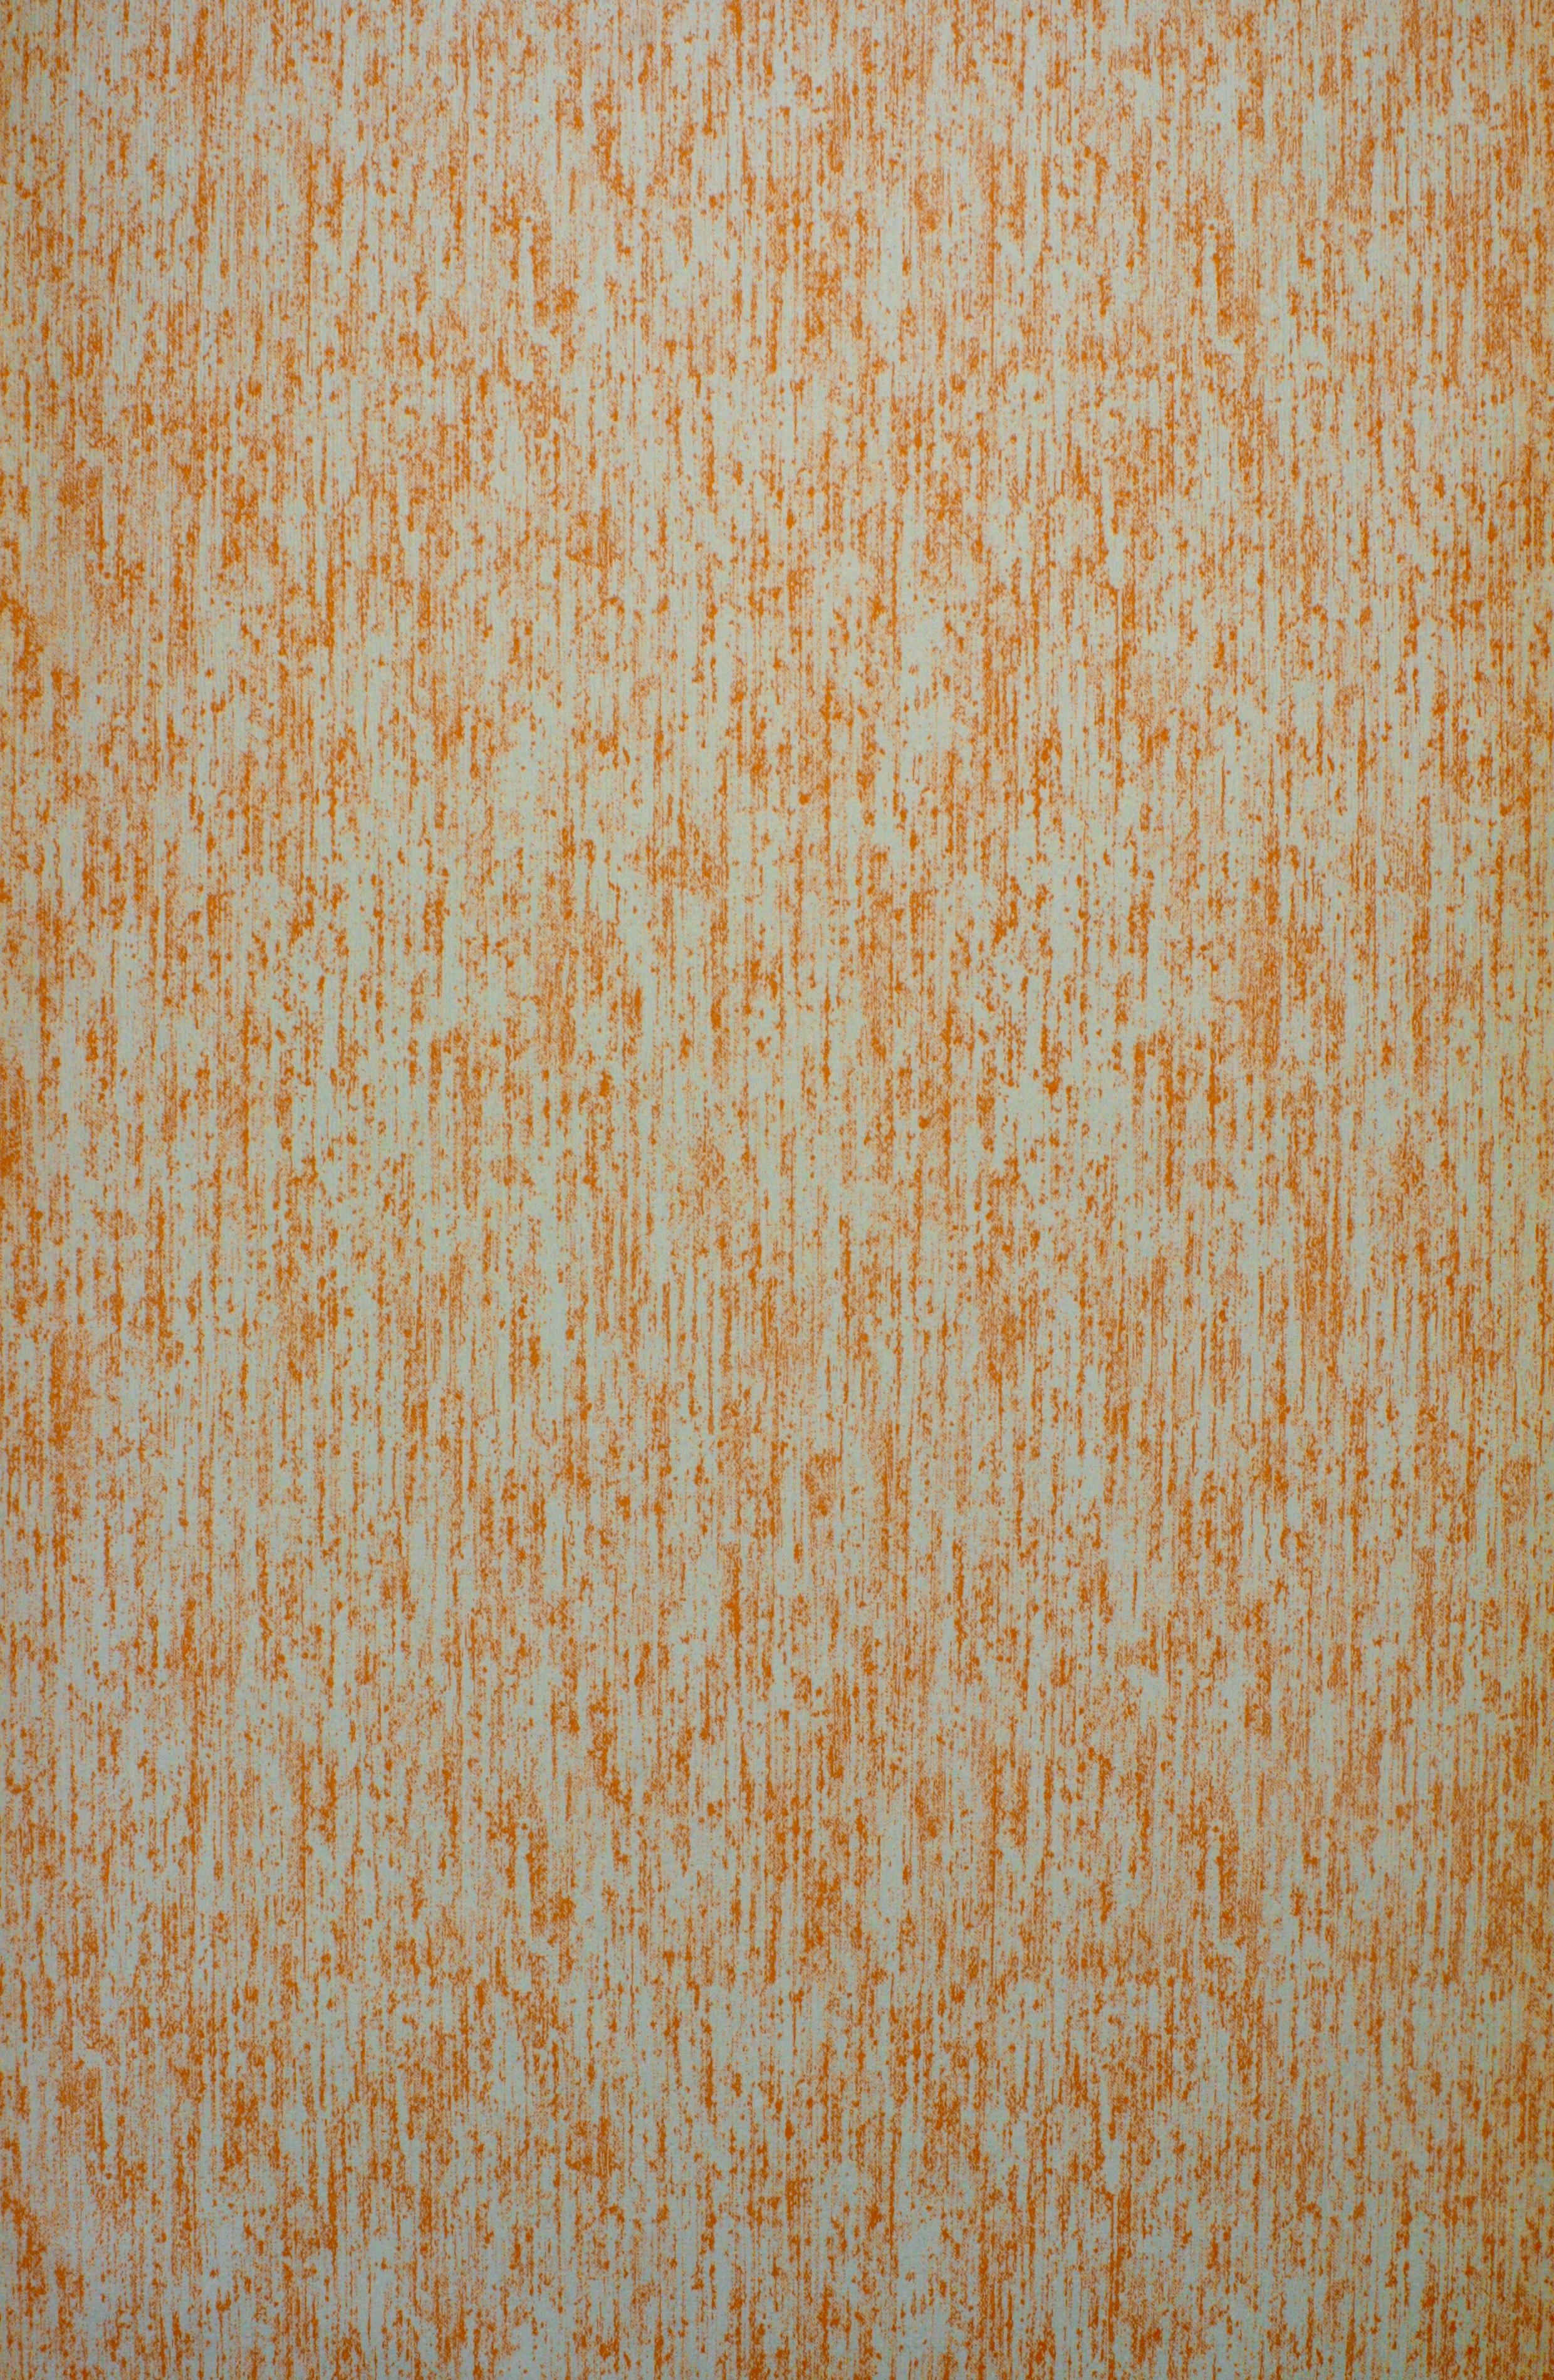 Vintage Orange Wallpaper